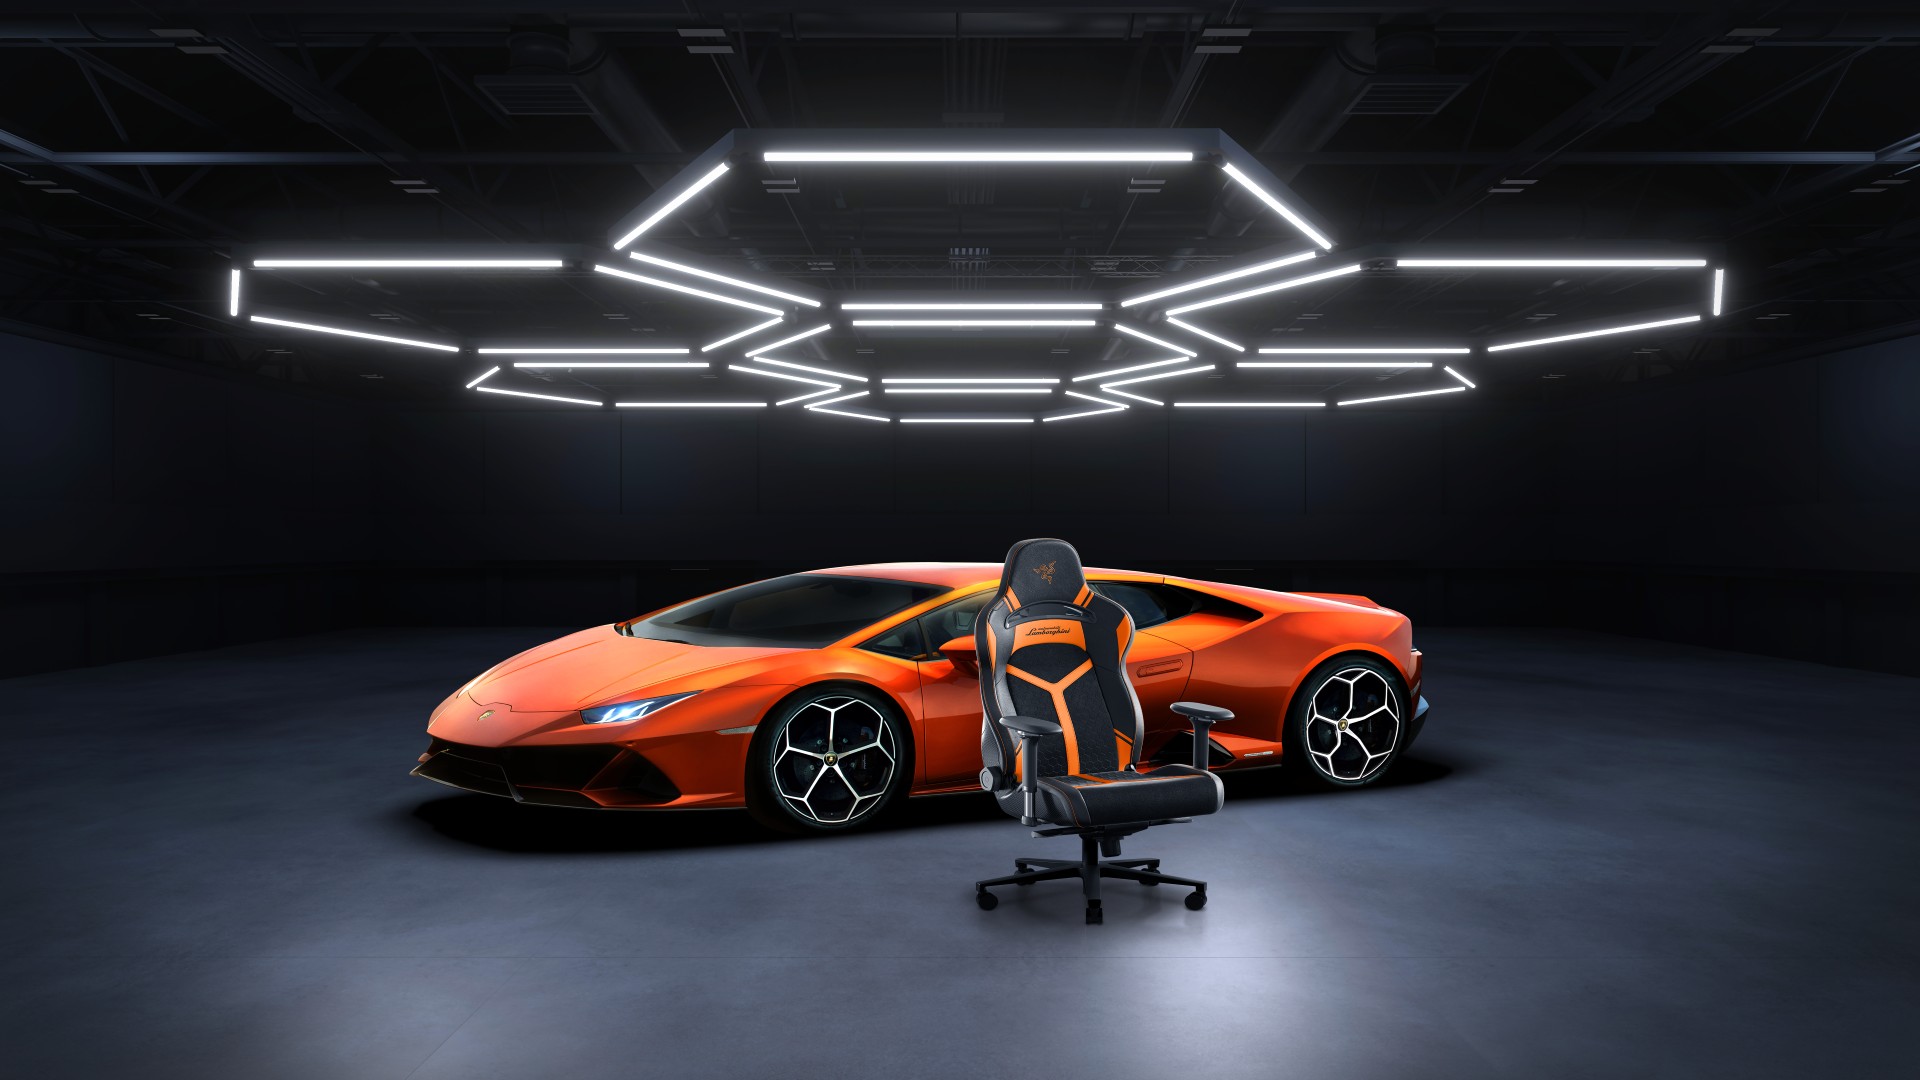 Enki Pro Automobili Lamborghini Final Visual V2